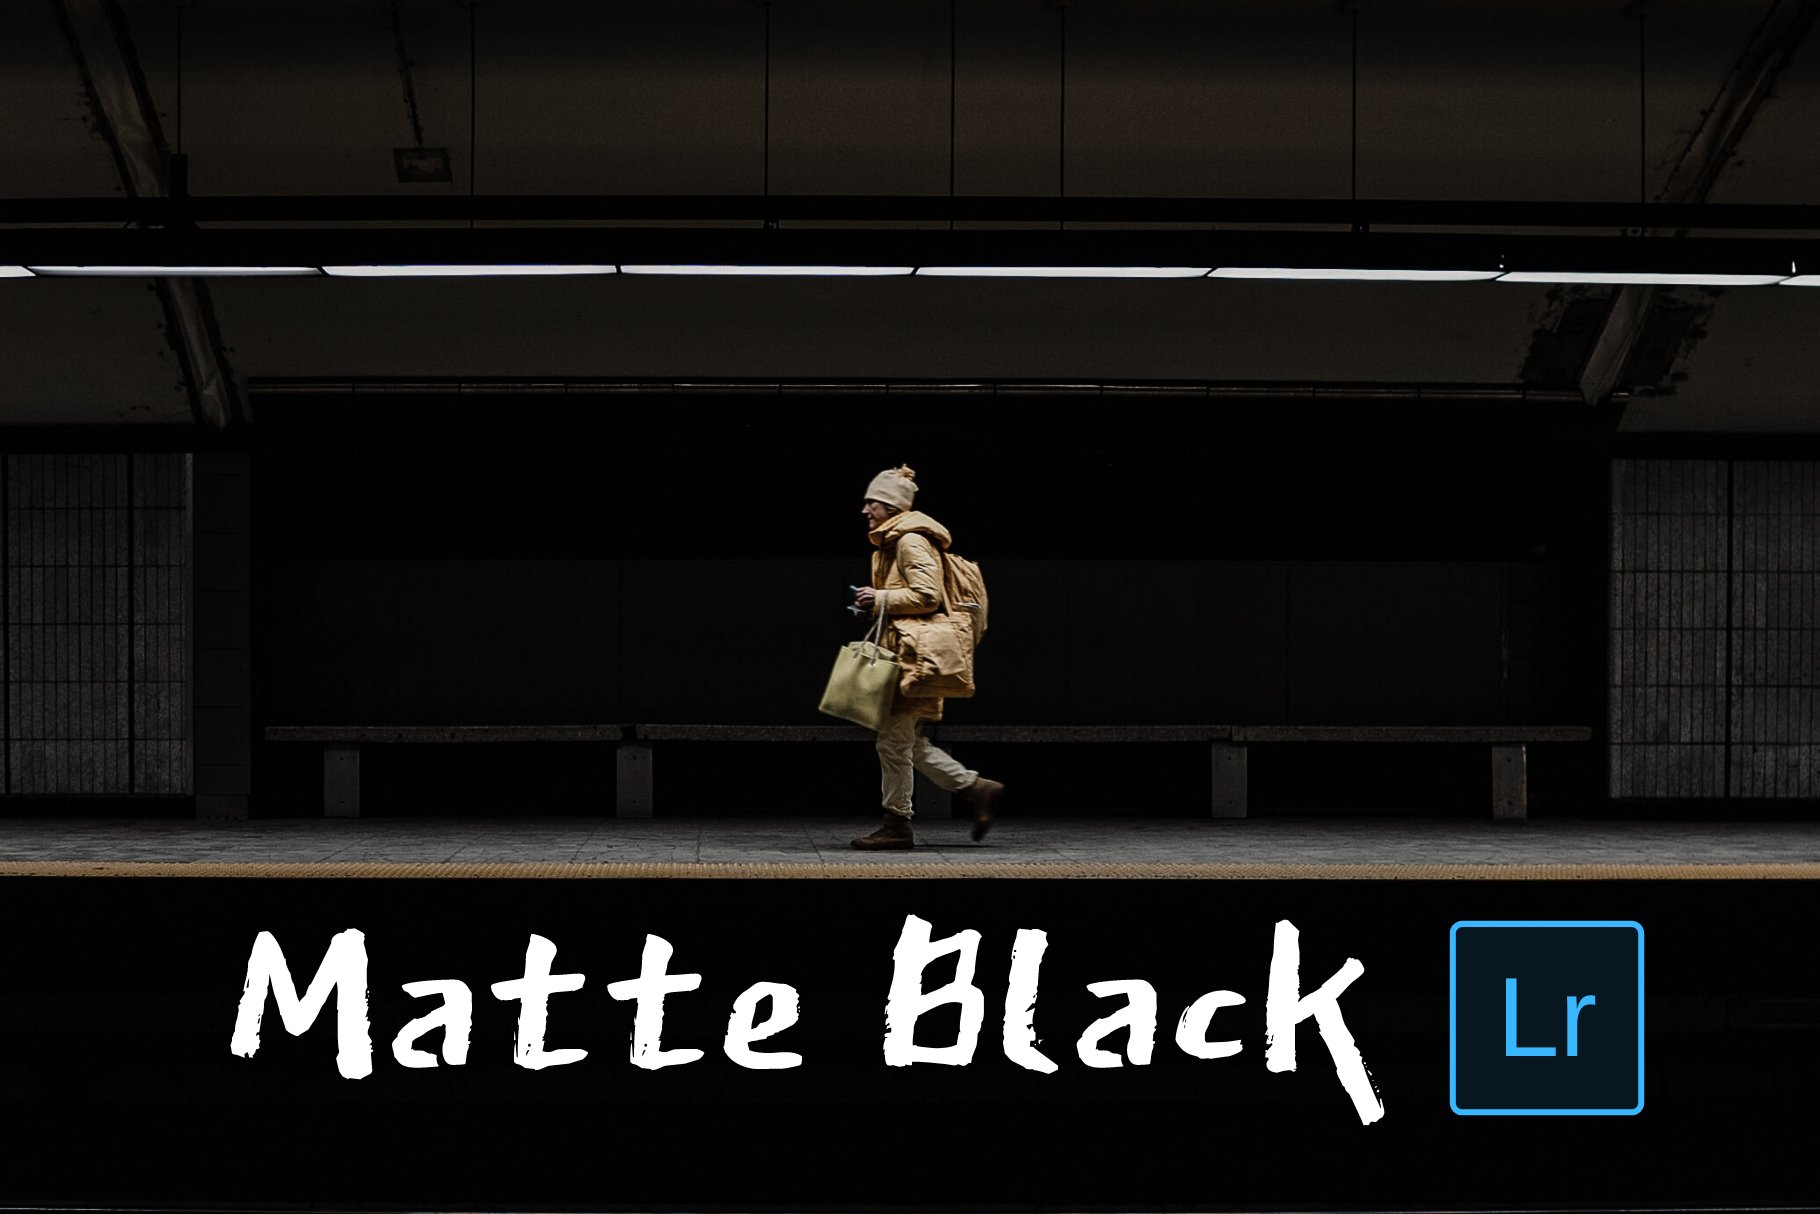 Matte Black Lightroom Presetscover image.